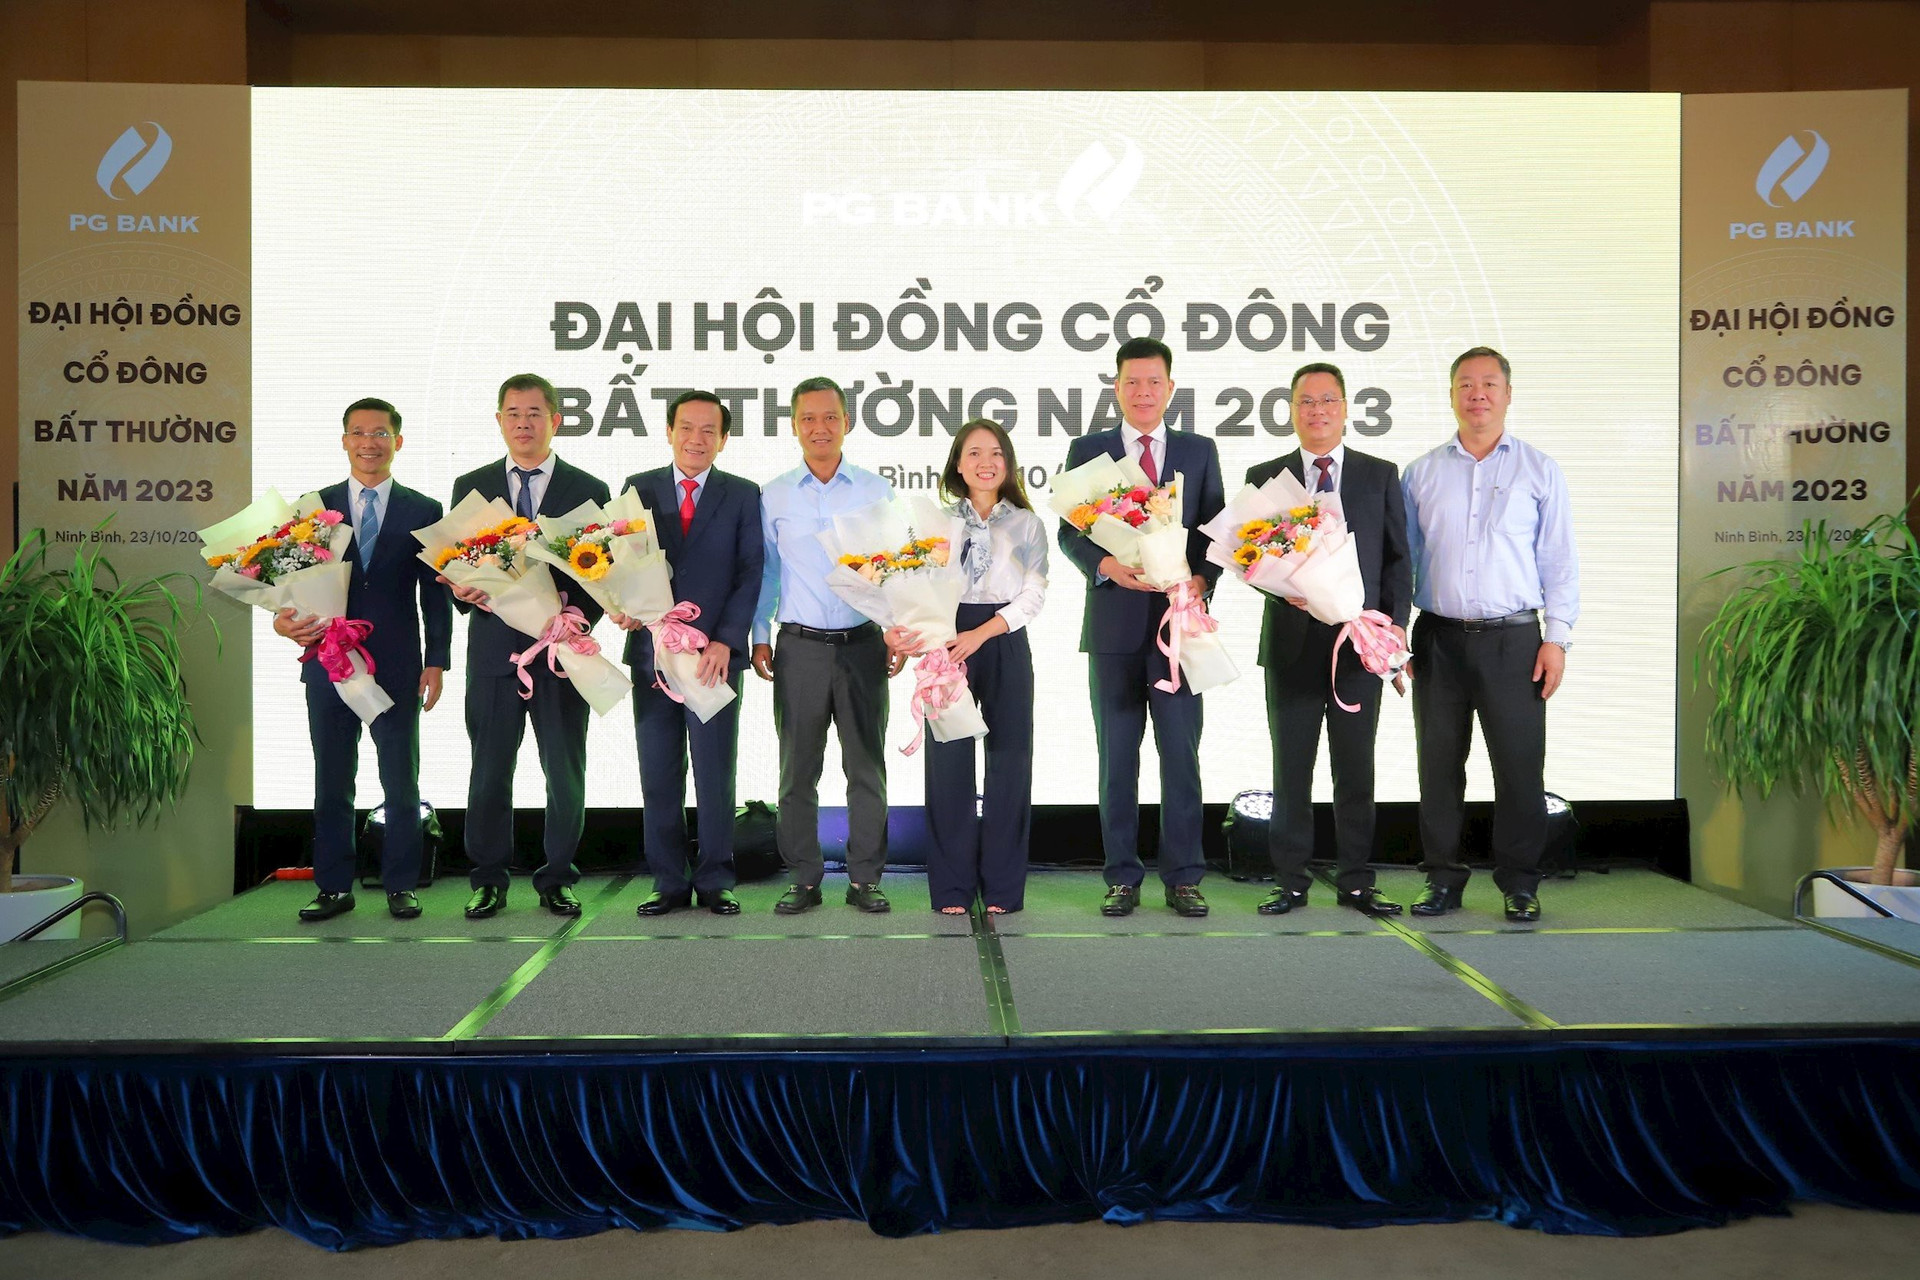 PG Bank tổ chức thành công ĐHCĐ bất thường, ông Phạm Mạnh Thắng được bầu làm chủ tịch HĐQT